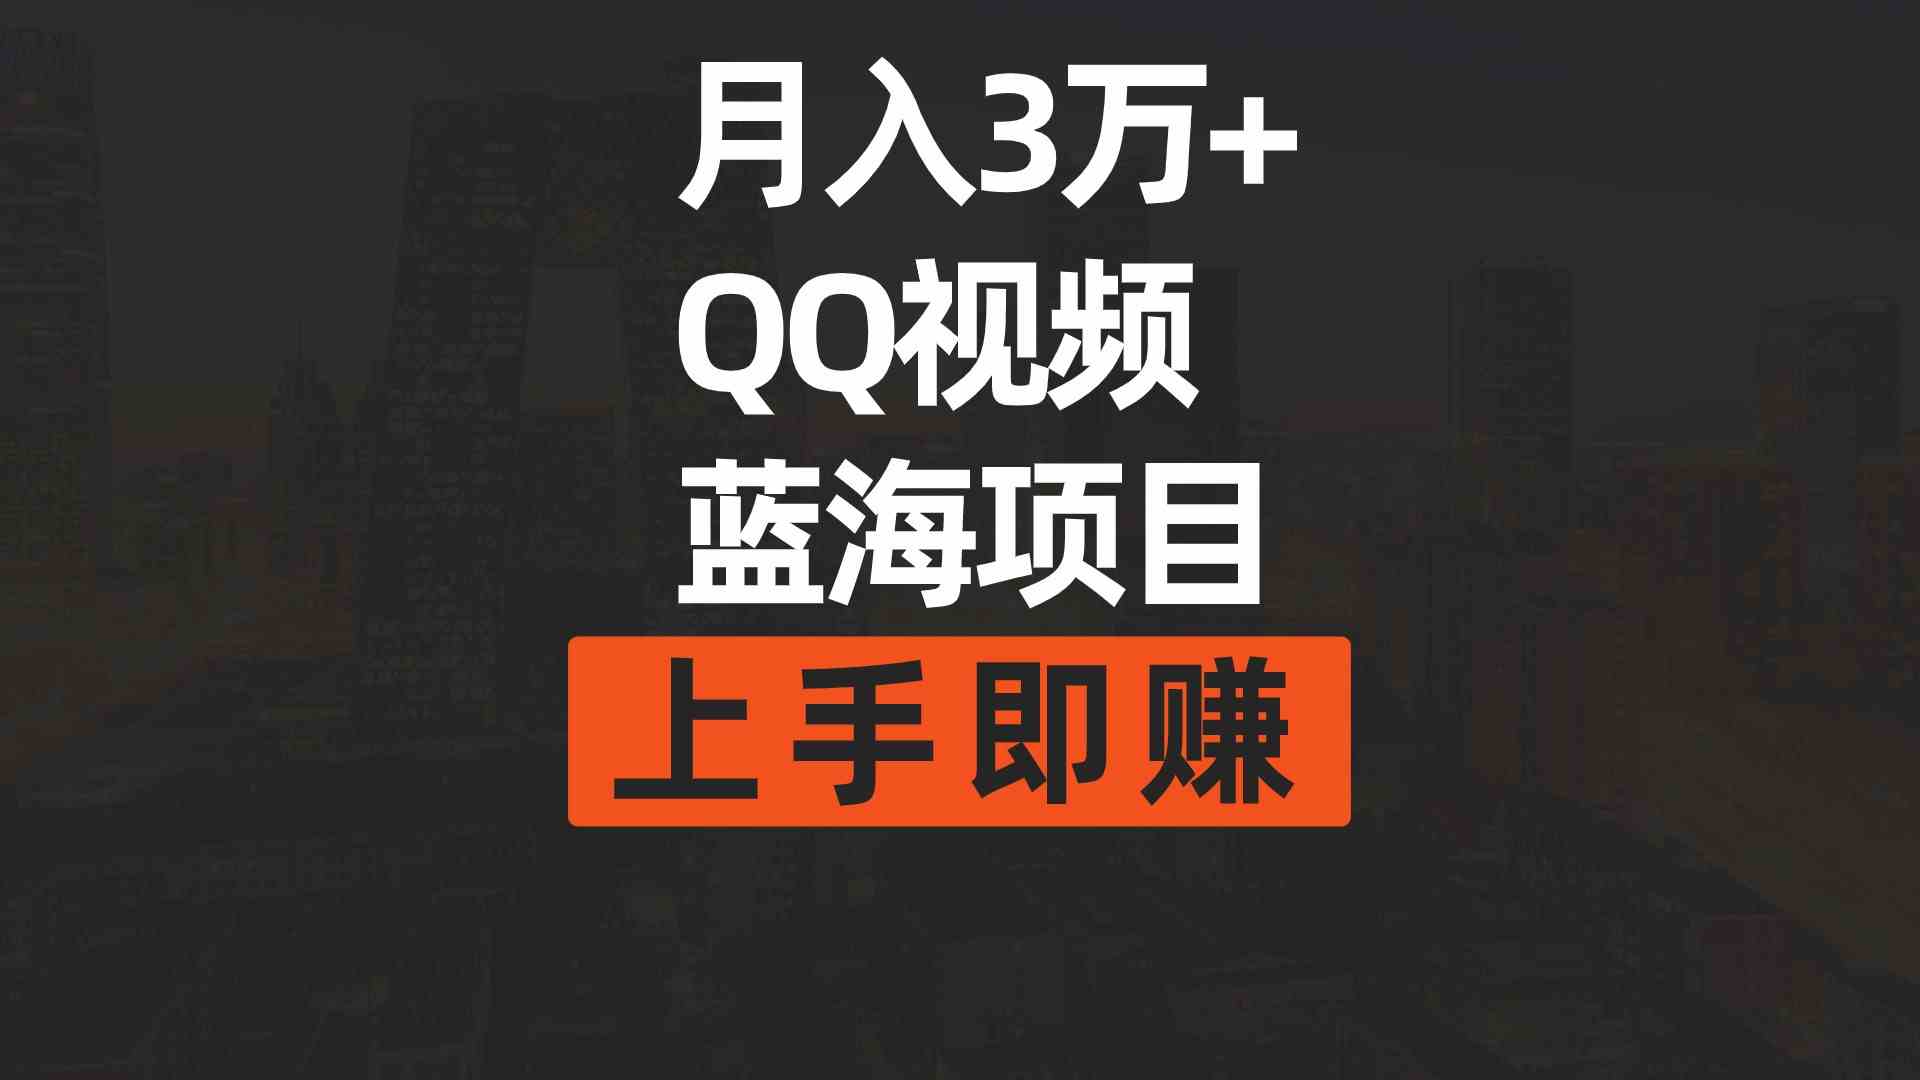 （9503期）月入3万+ 简单搬运去重QQ视频蓝海赛道  上手即赚-大海创业网